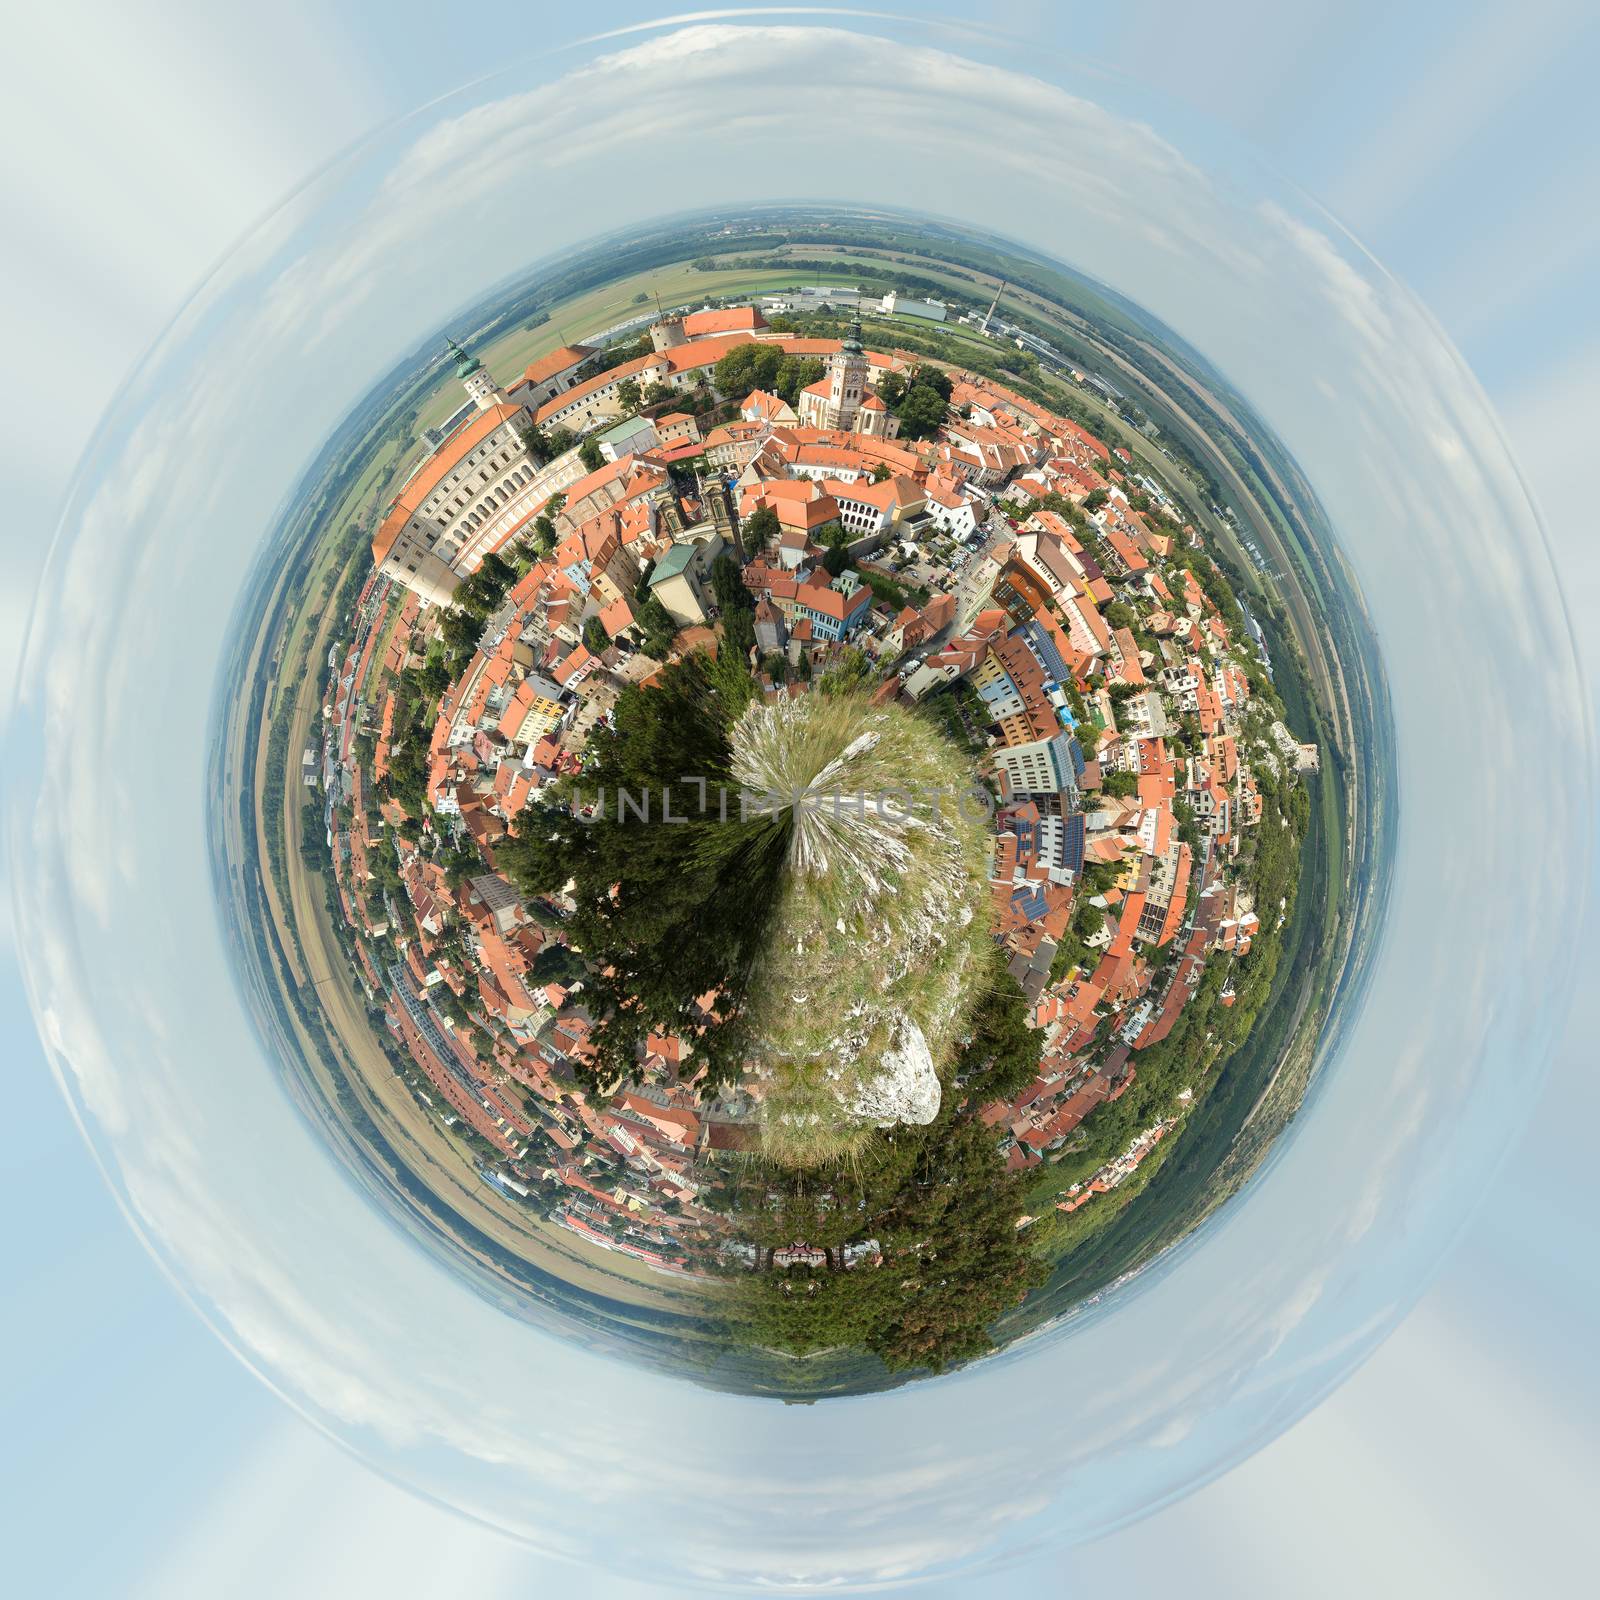 Planet of panorama of Mikulov by artush